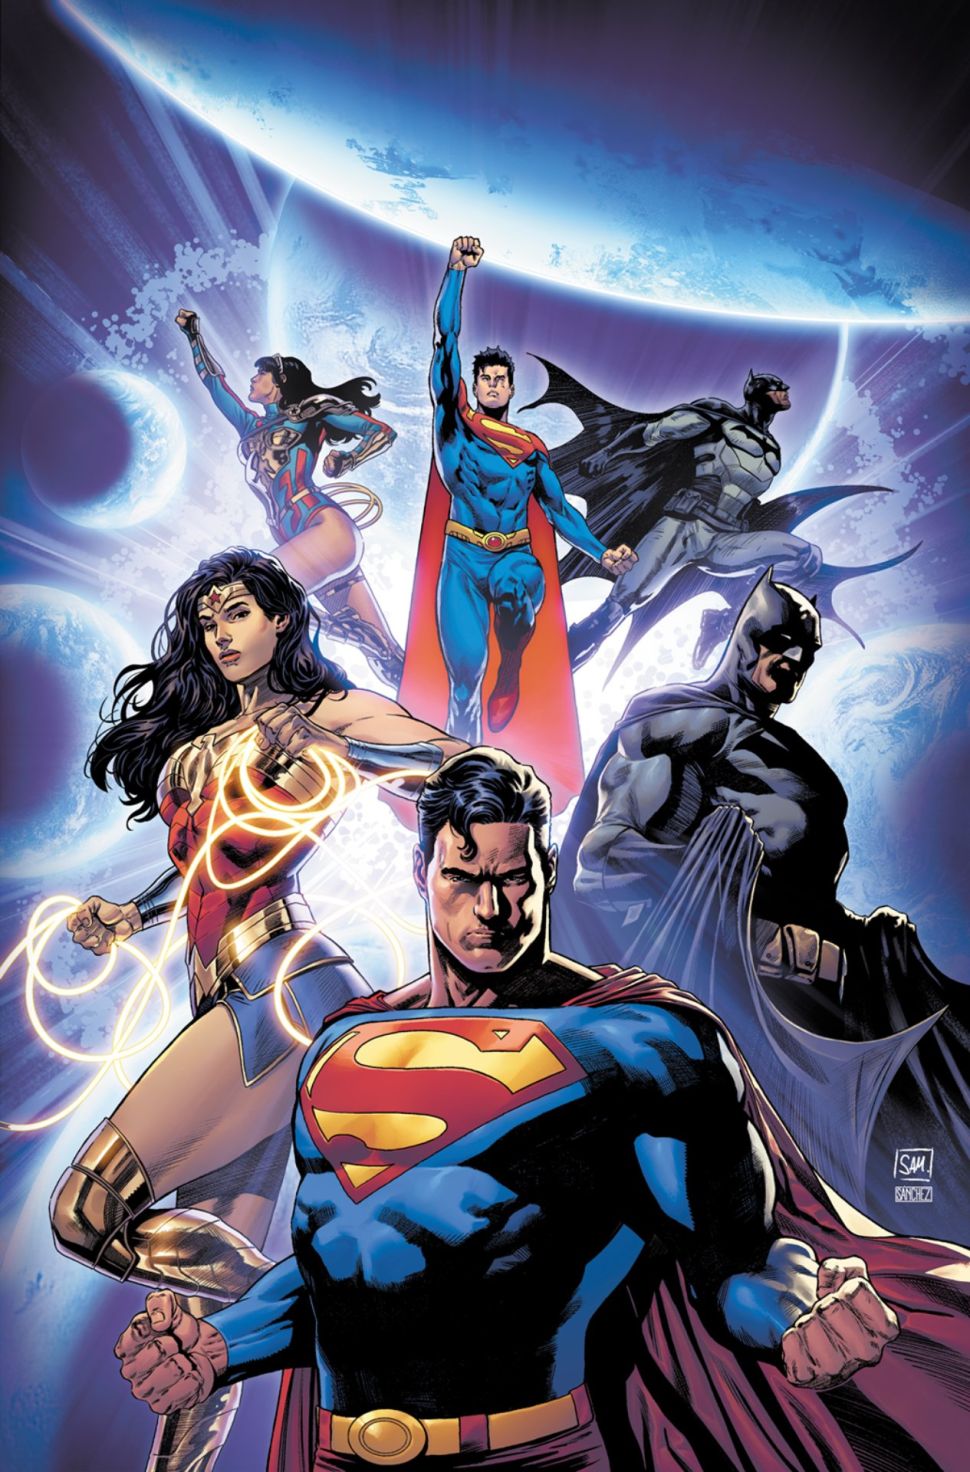 Full DC Comics Solicitations For February 2022 - Not Just Batman